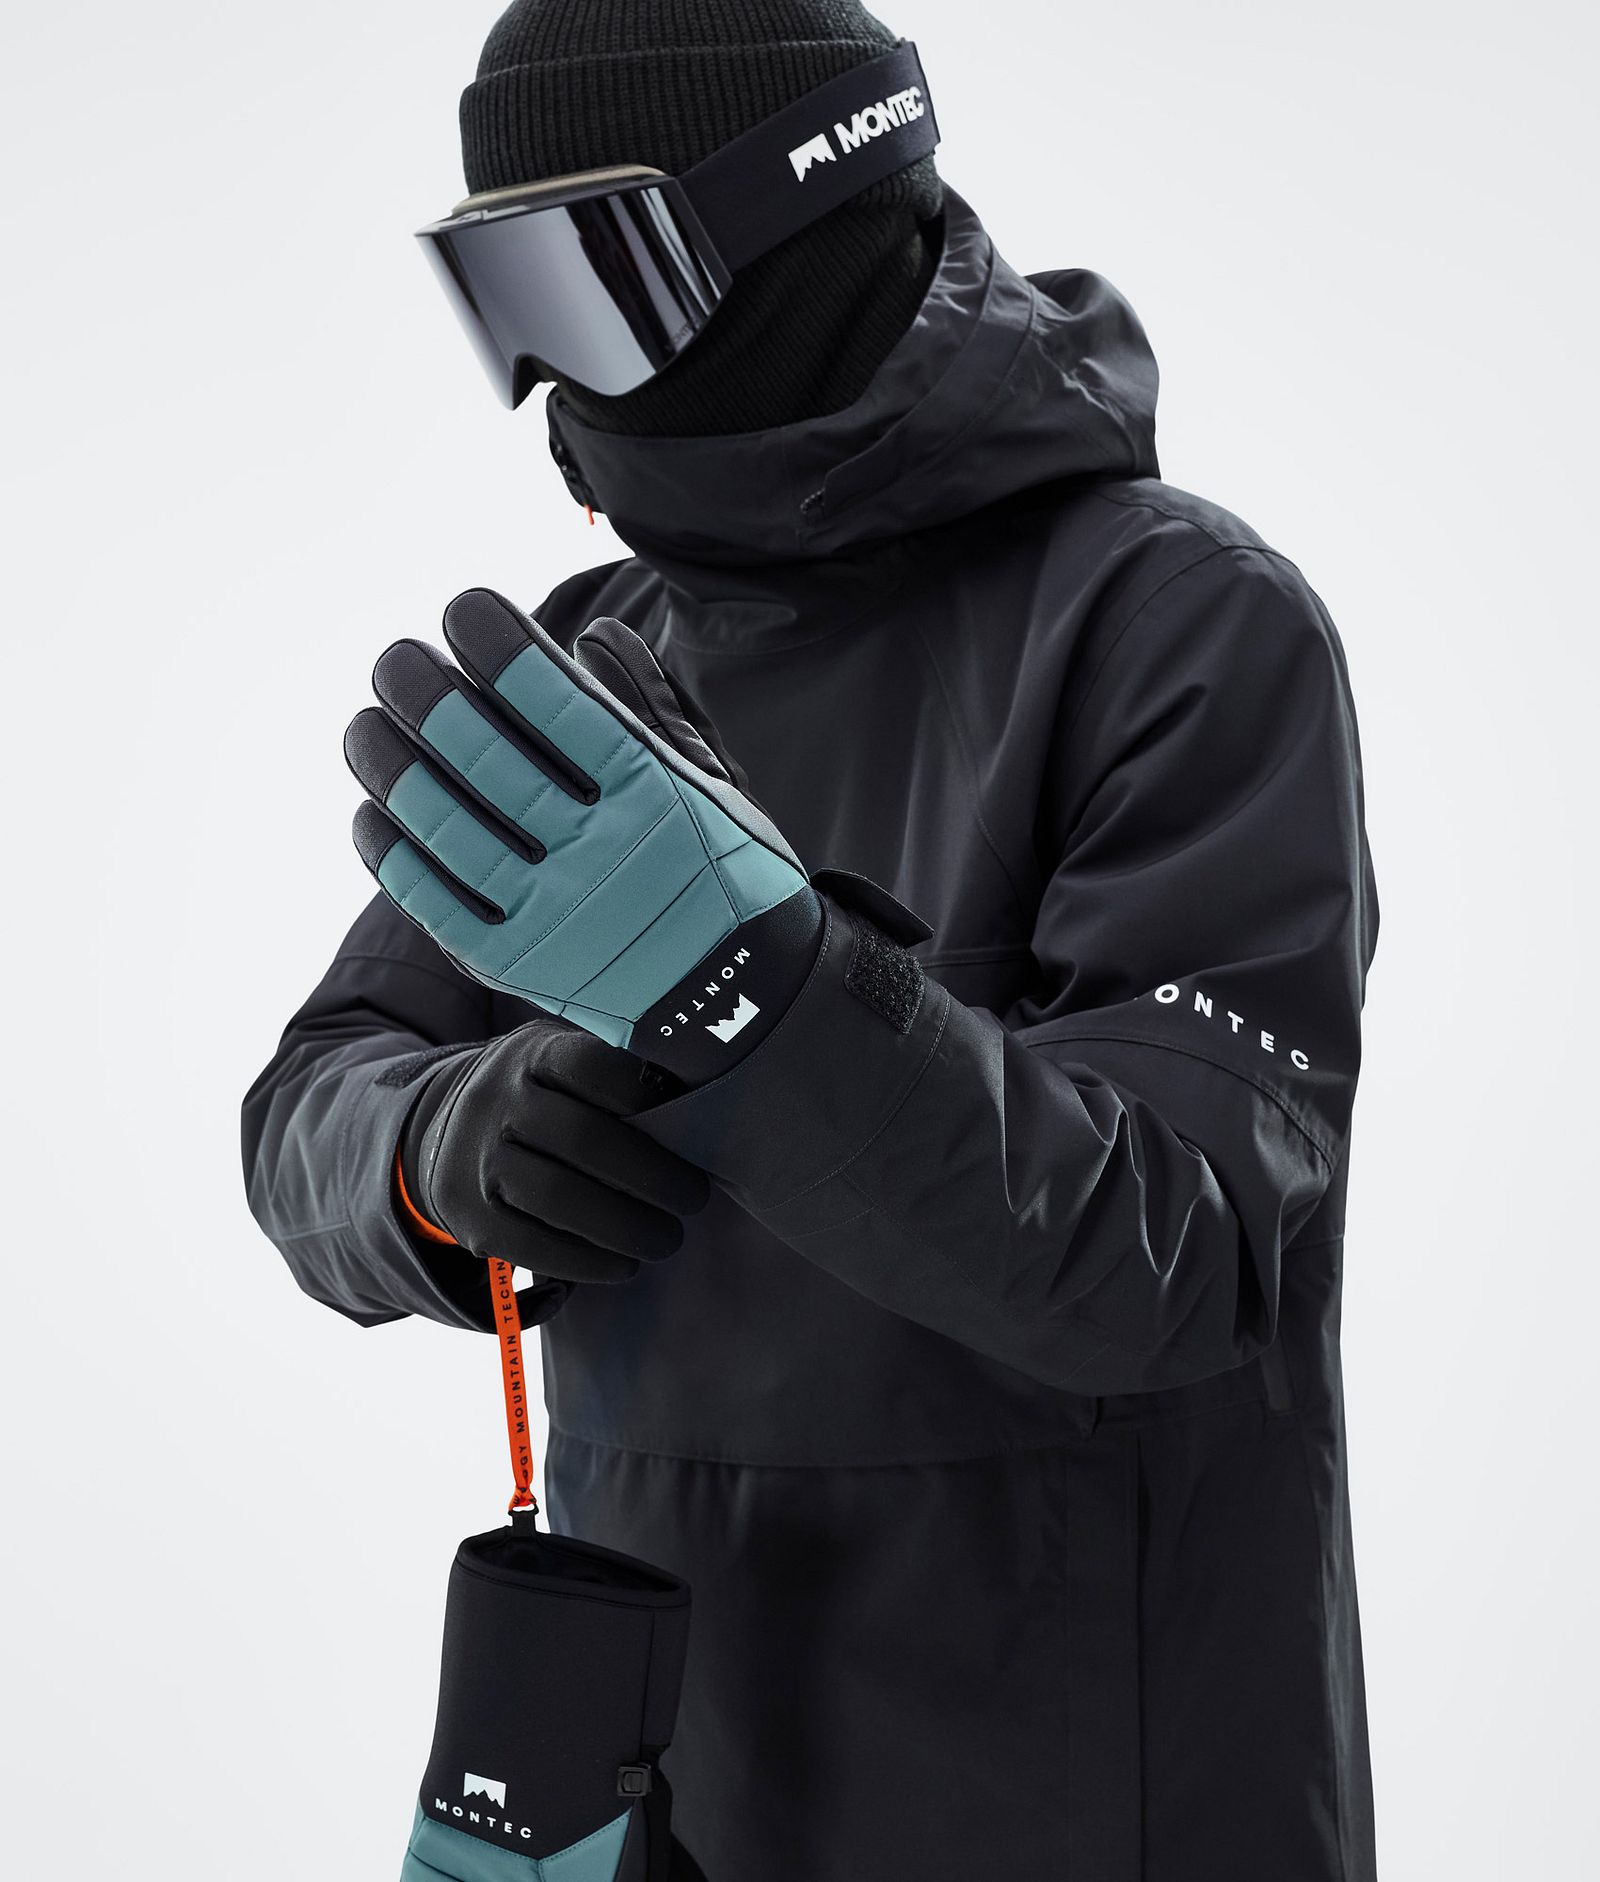 Kilo 2022 Ski Gloves Atlantic, Image 3 of 5